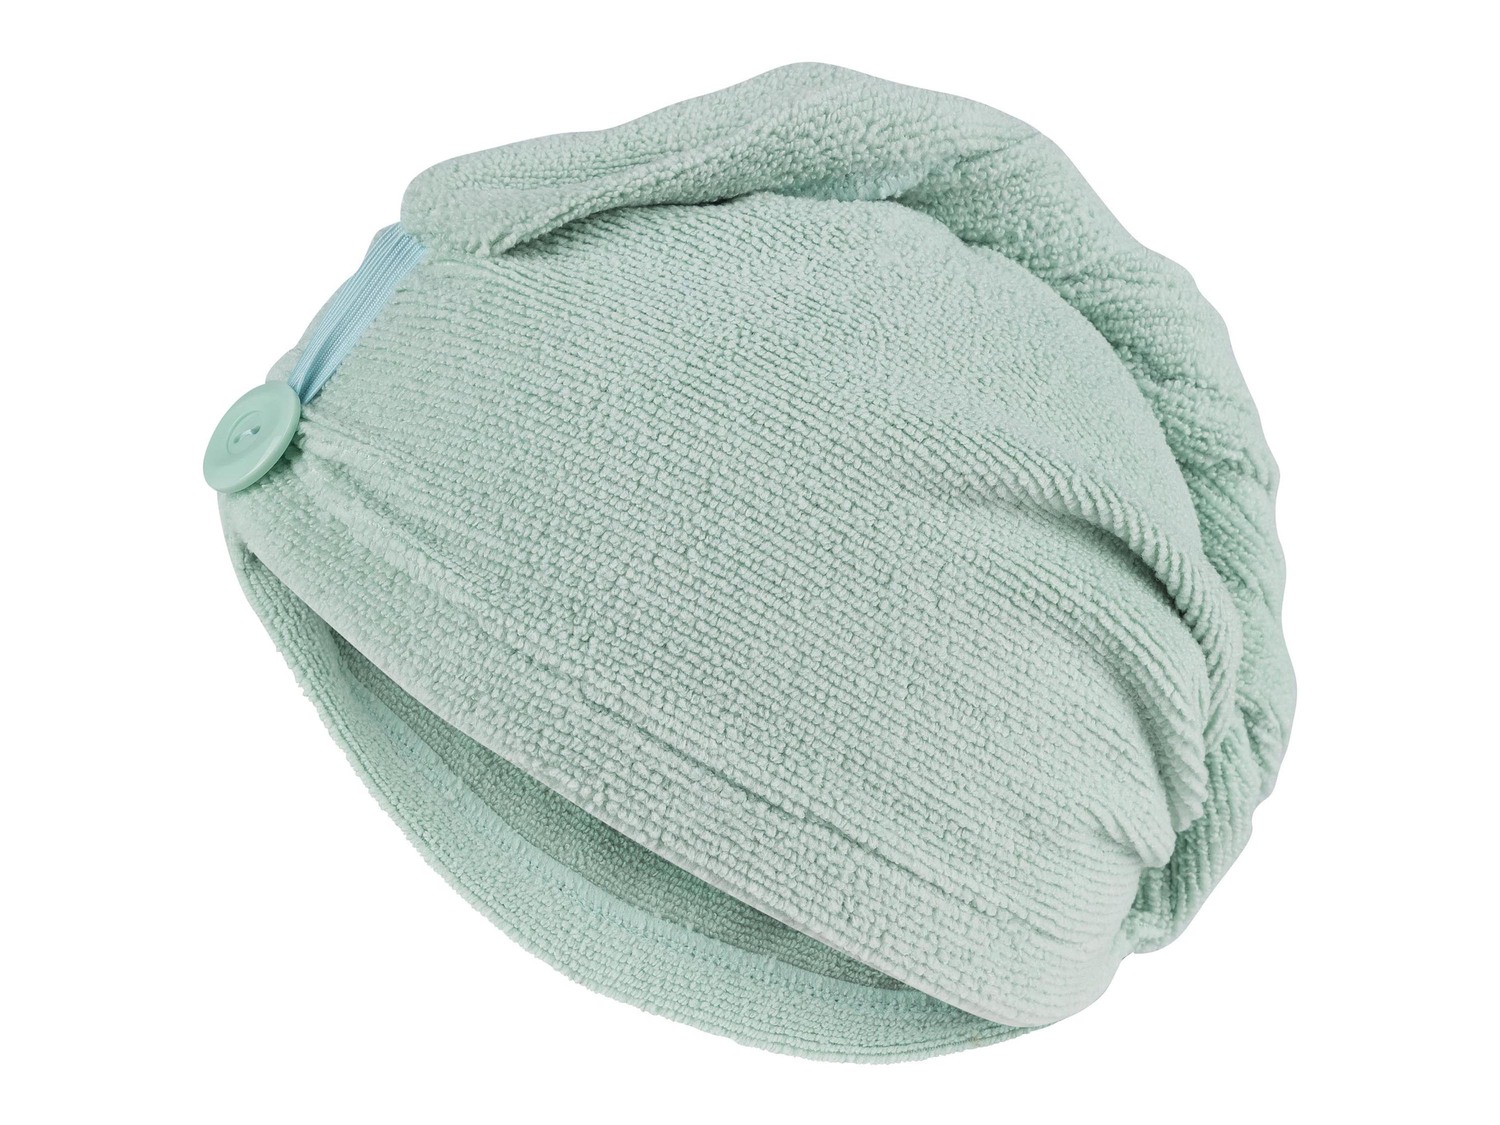 Asciugamano a turbante per capelli Miomare, prezzo 2.99 &#8364; 
- In microfibra
- ...